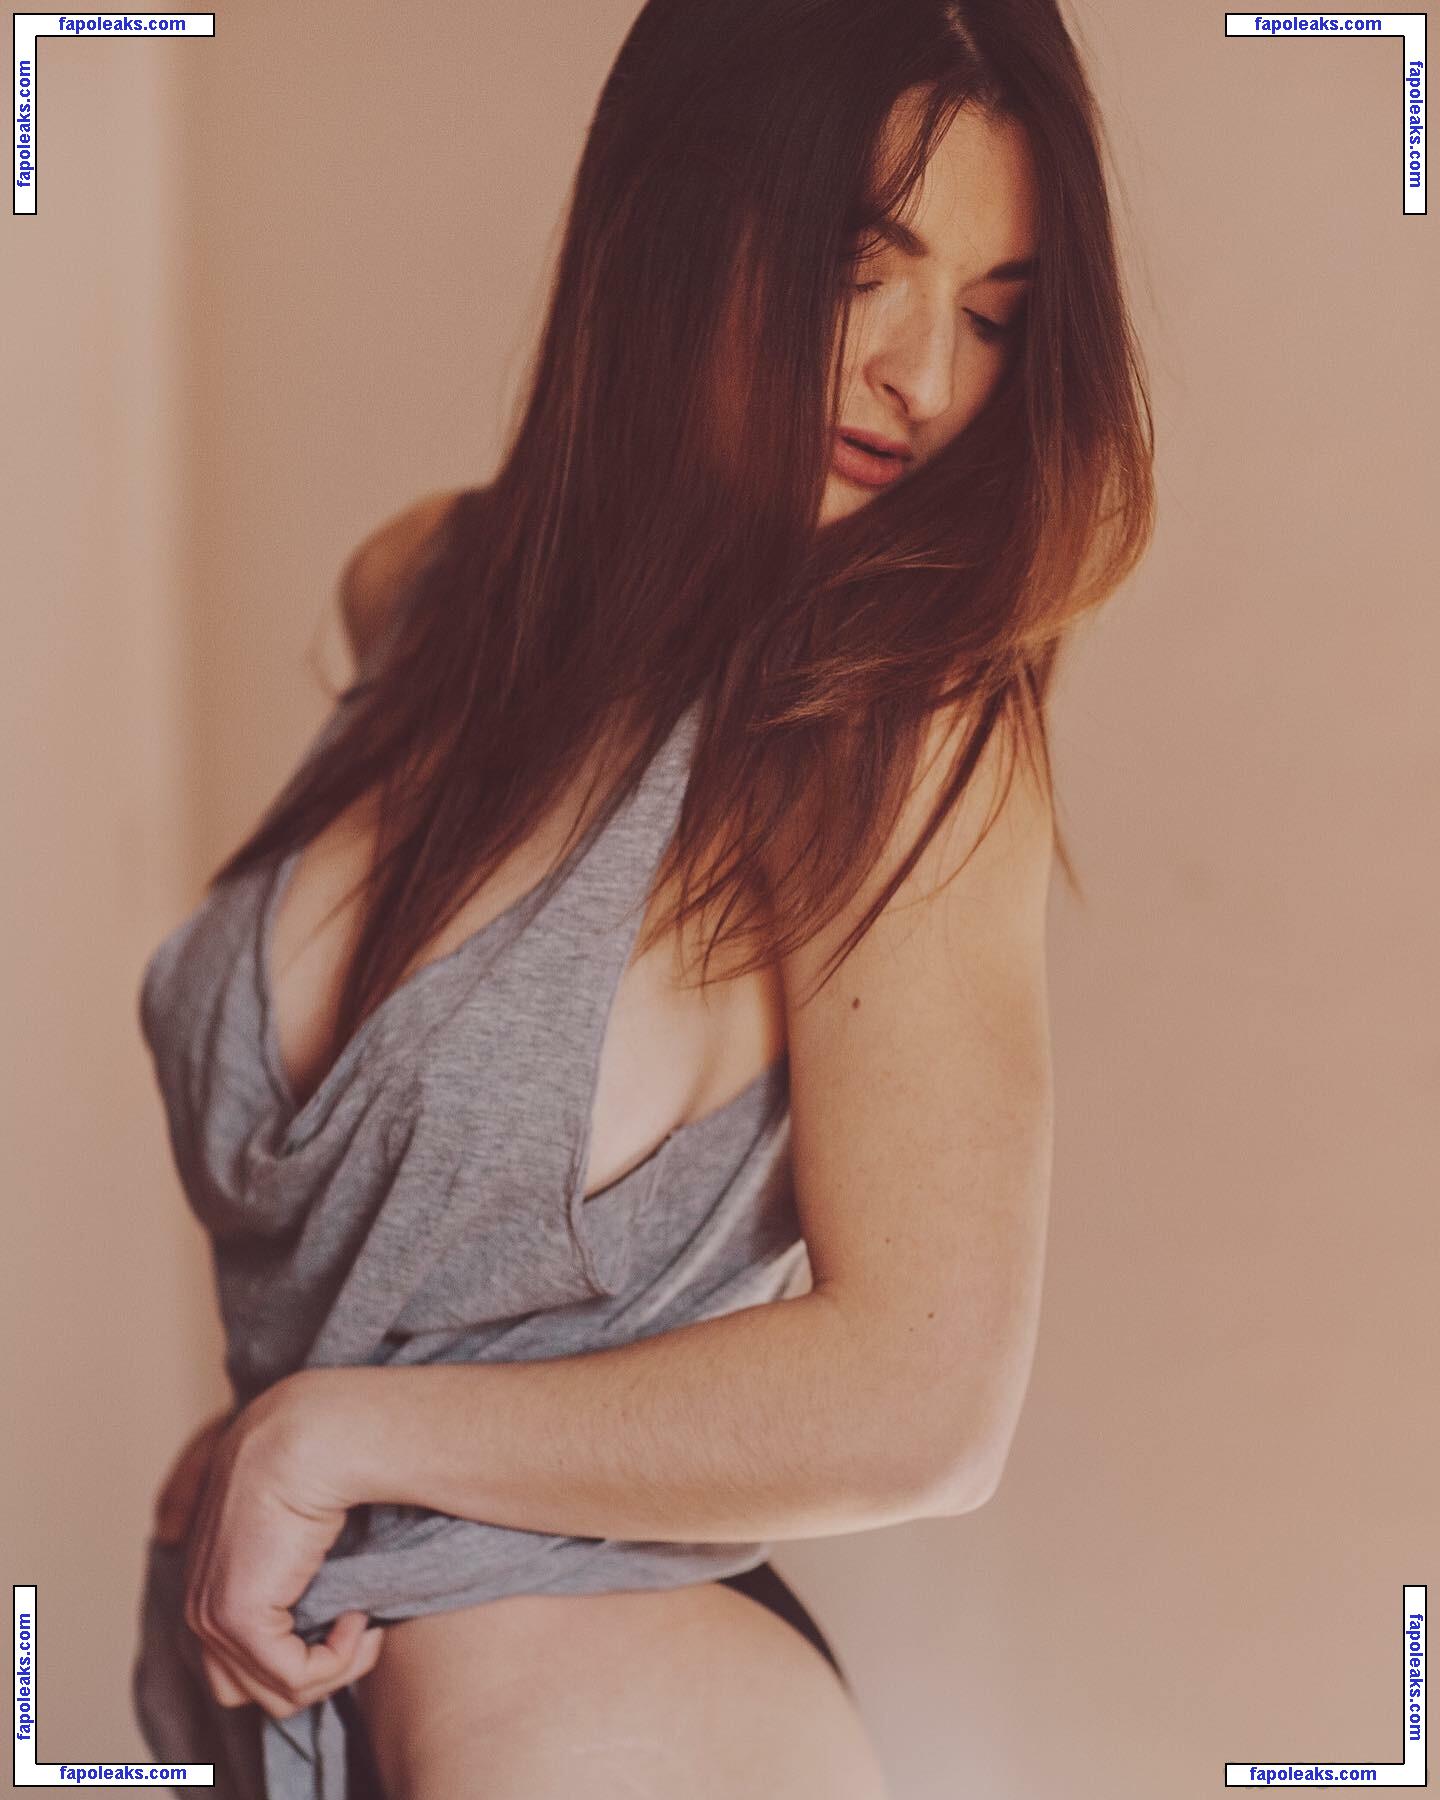 Chloe Bonhaure / chloebonhaure / chloewildd nude photo #0058 from OnlyFans